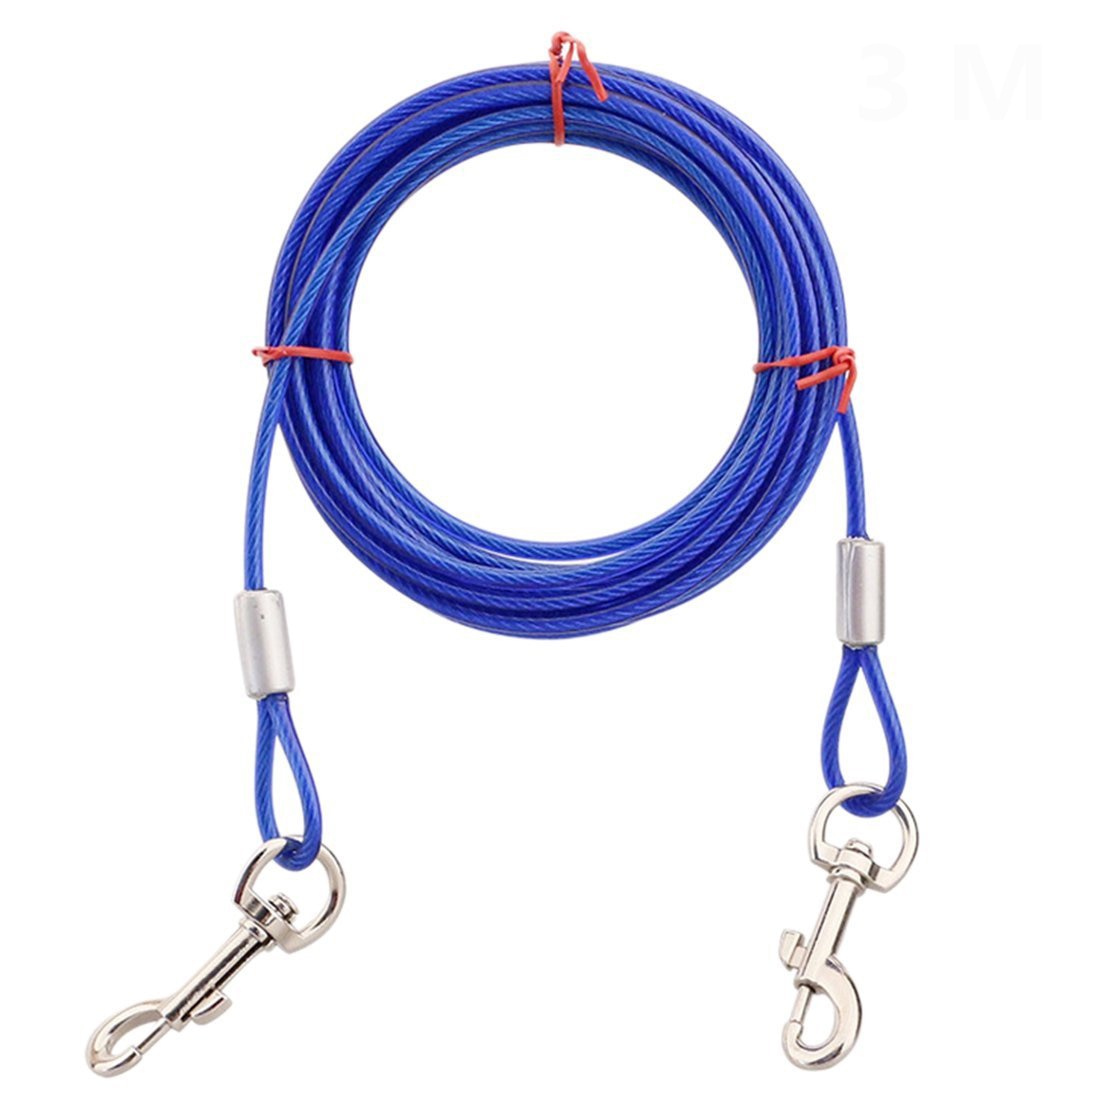 Hondenriemen Tie-Out Kabel Staaldraad Met Dual Heads Metalen Haken 3M 5M 10M lange PL008